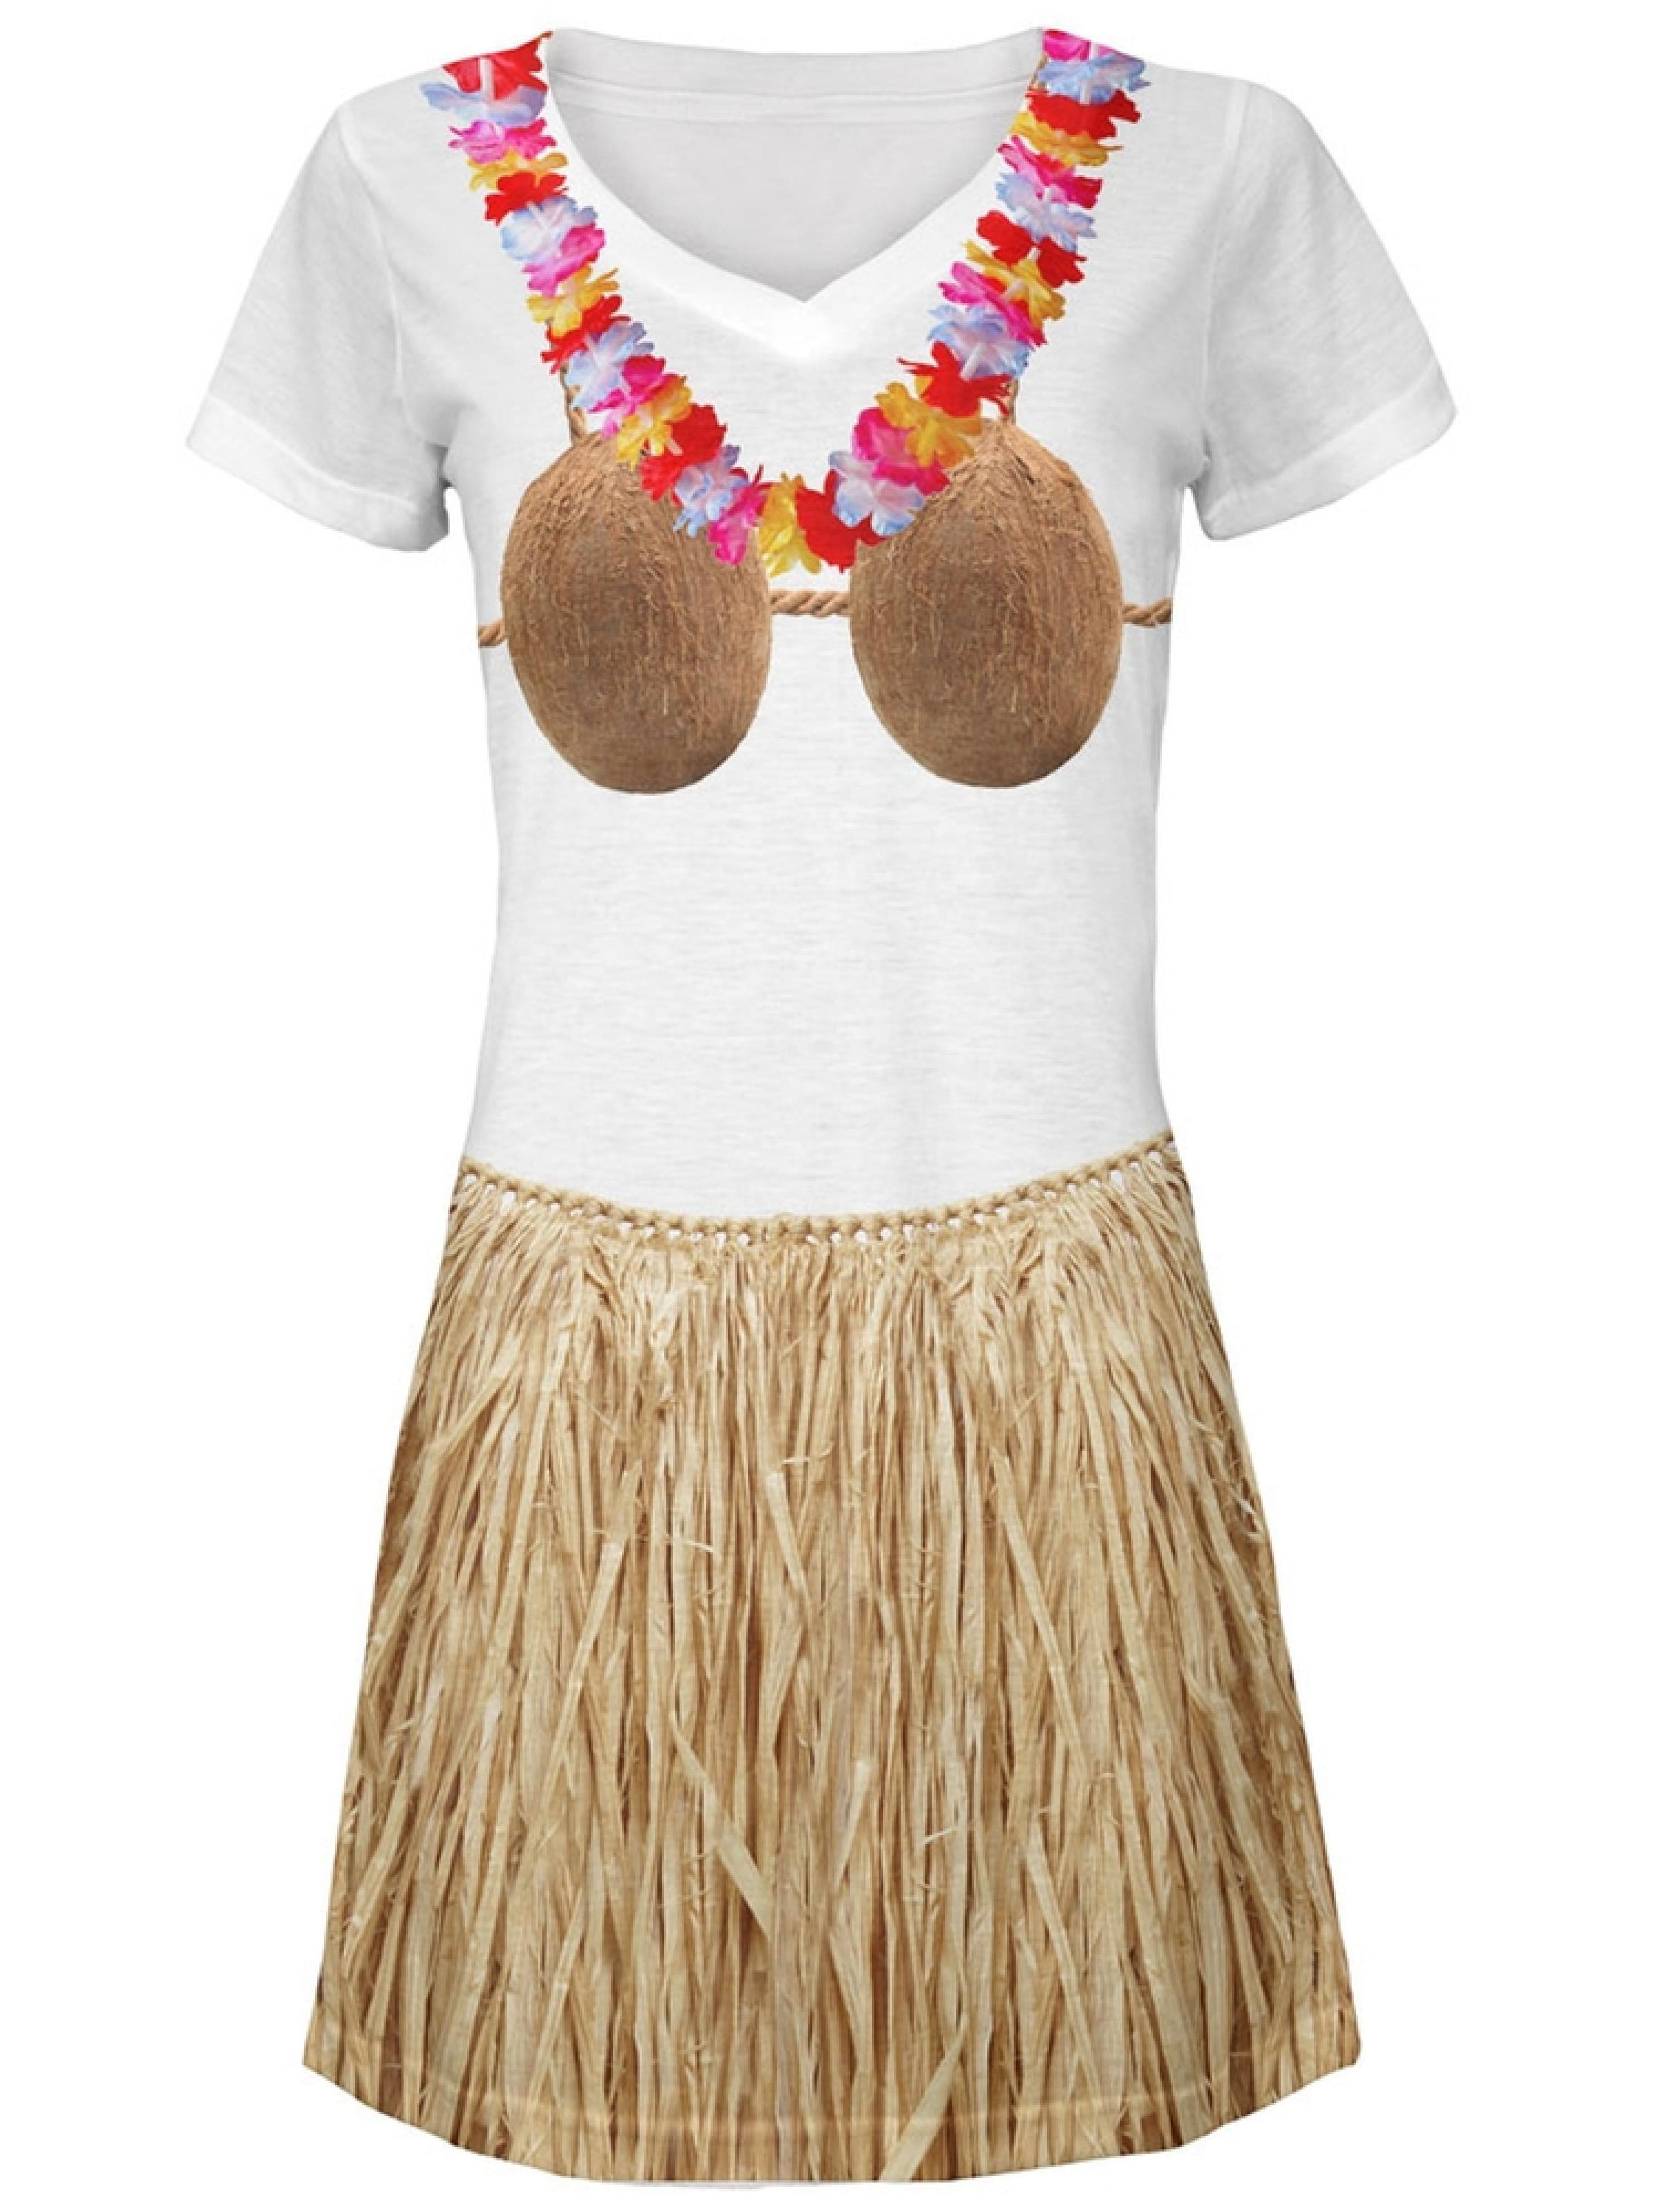 Hawaiian Grass Skirt Flower Leis Coconut Bra Adult Child Fancy